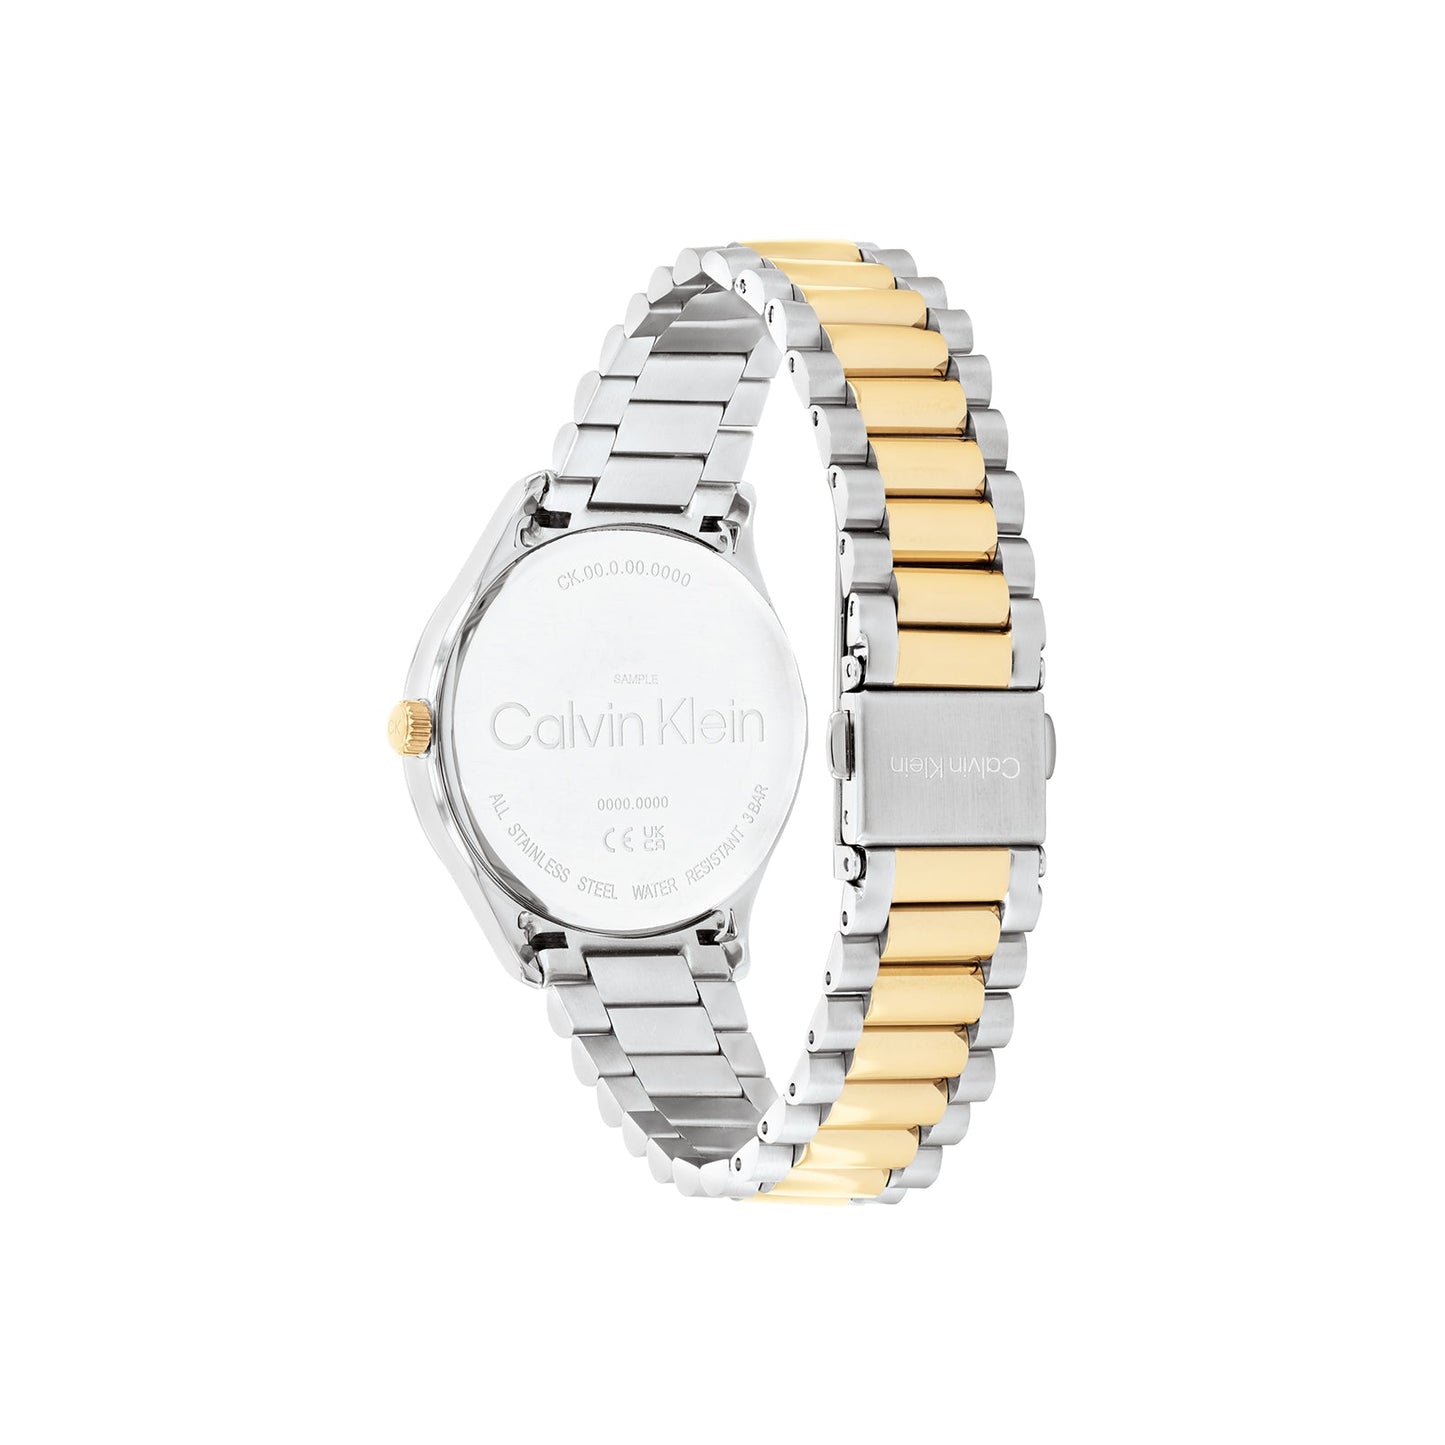 Calvin Klein 25200167 Unisex Two-Tone Watch